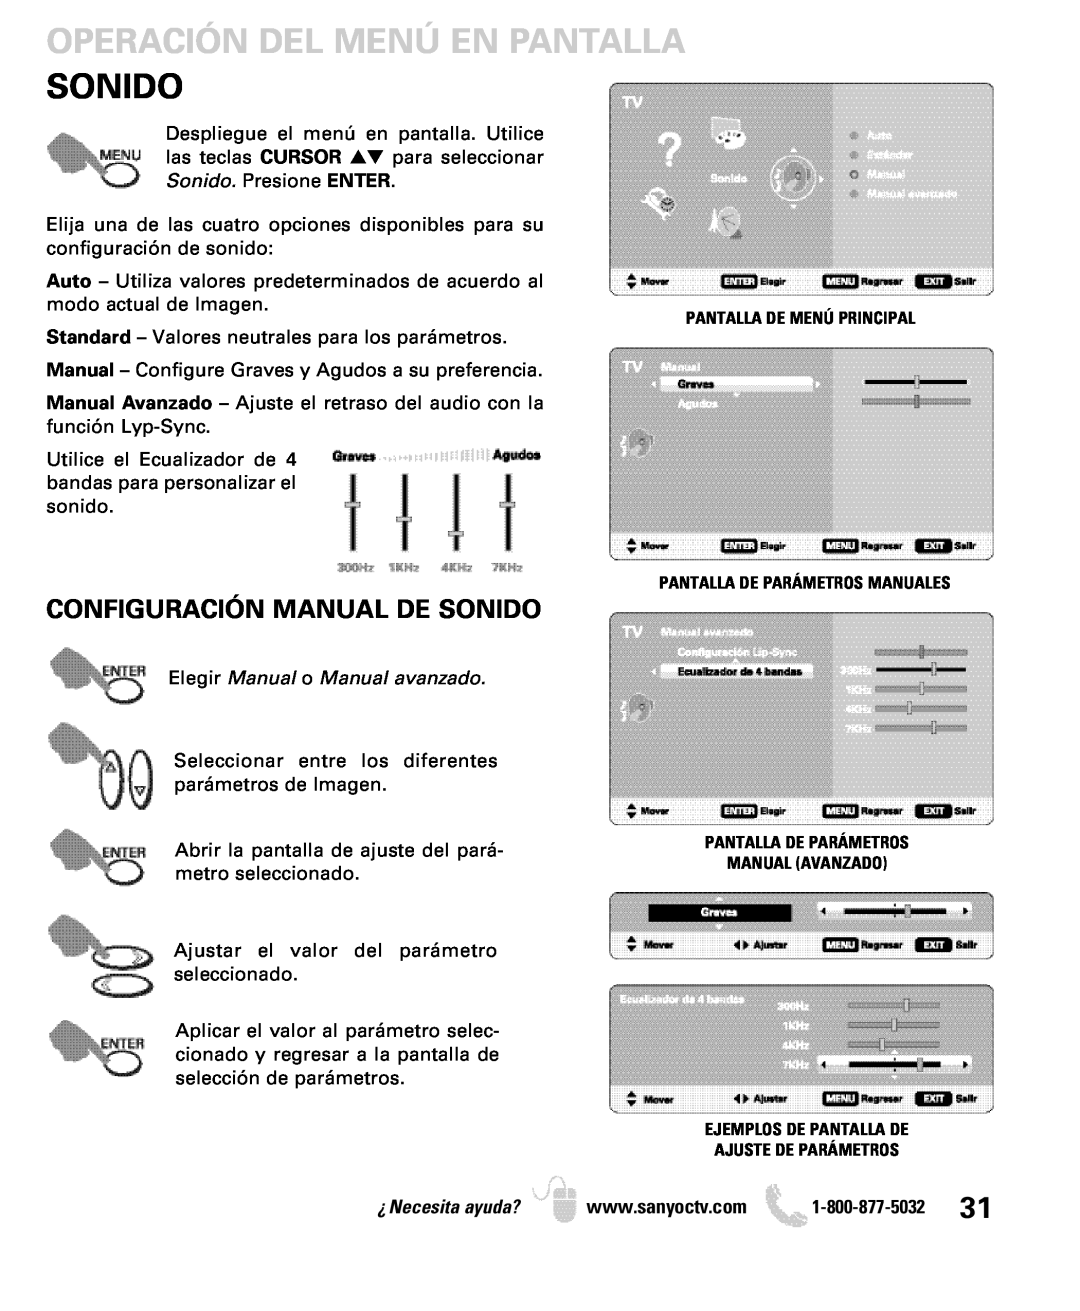 Sanyo DP19649, DP26649 Configuración Manual De Sonido, Operación Del Menú En Pantalla, Elegir Manual o Manual avanzado 